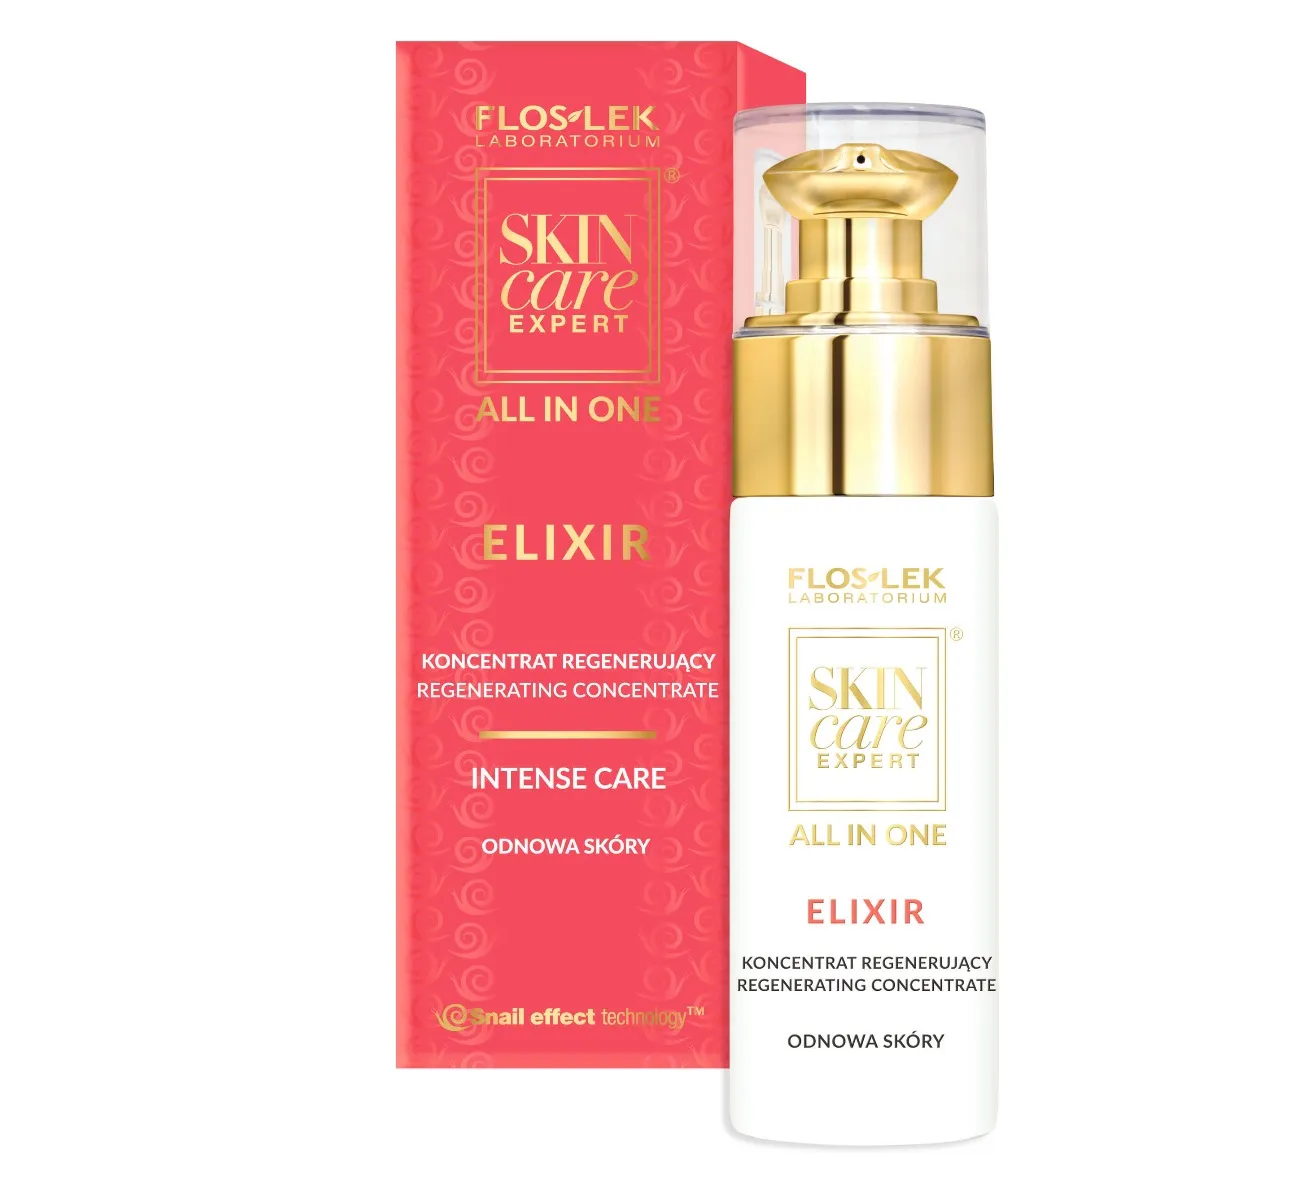 Flos-Lek Skin Care Expert All In One, Elixir, koncentrat regenerujący, 30 ml